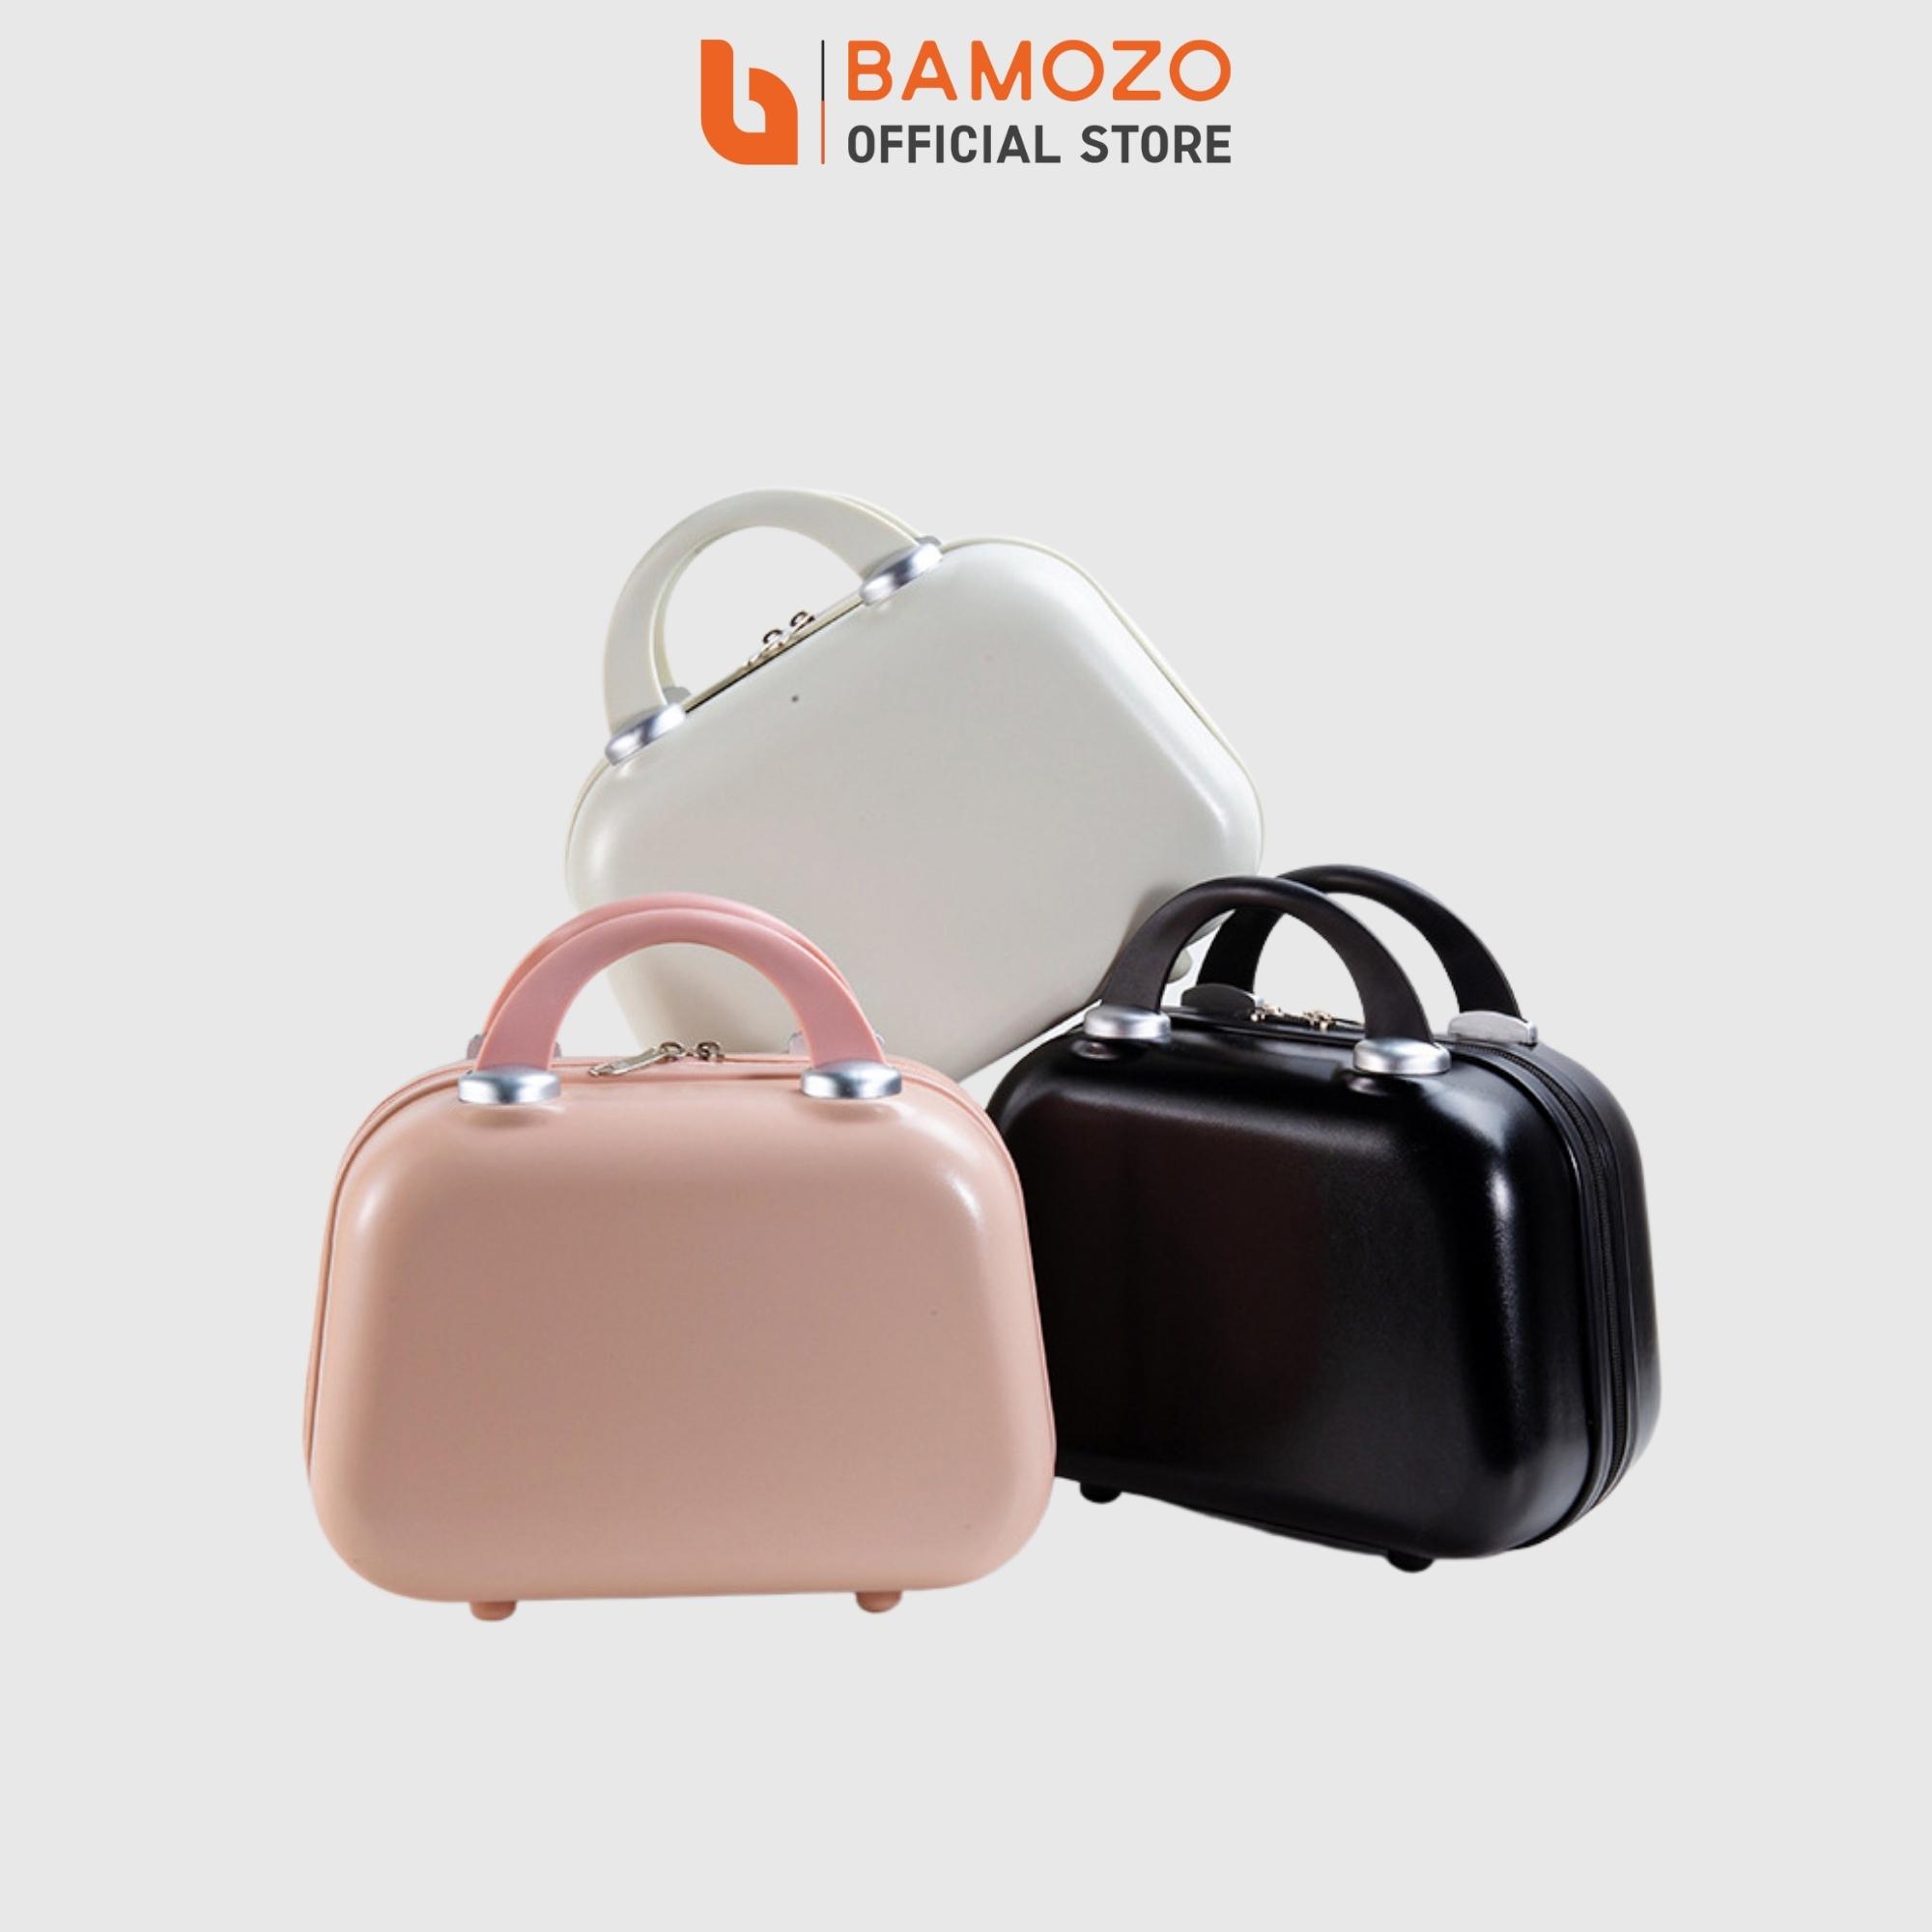 Vali du lịch thời trang Bamozo 8812 size 14/20/24 , vali nhựa kéo được bảo hành 5 năm